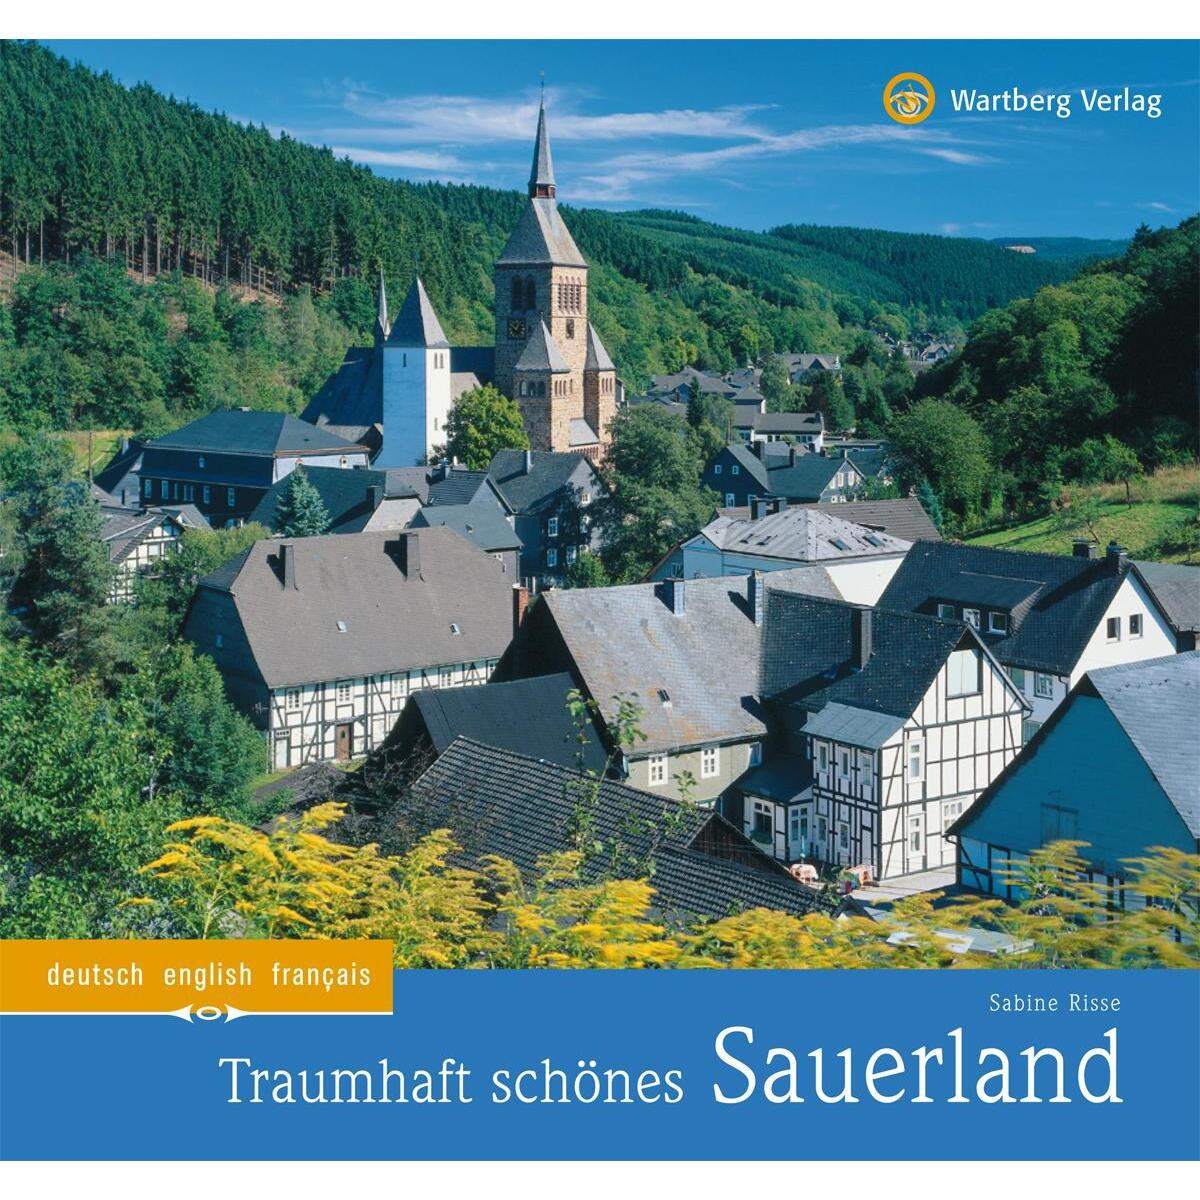 Traumhaft schönes Sauerland von Wartberg Verlag